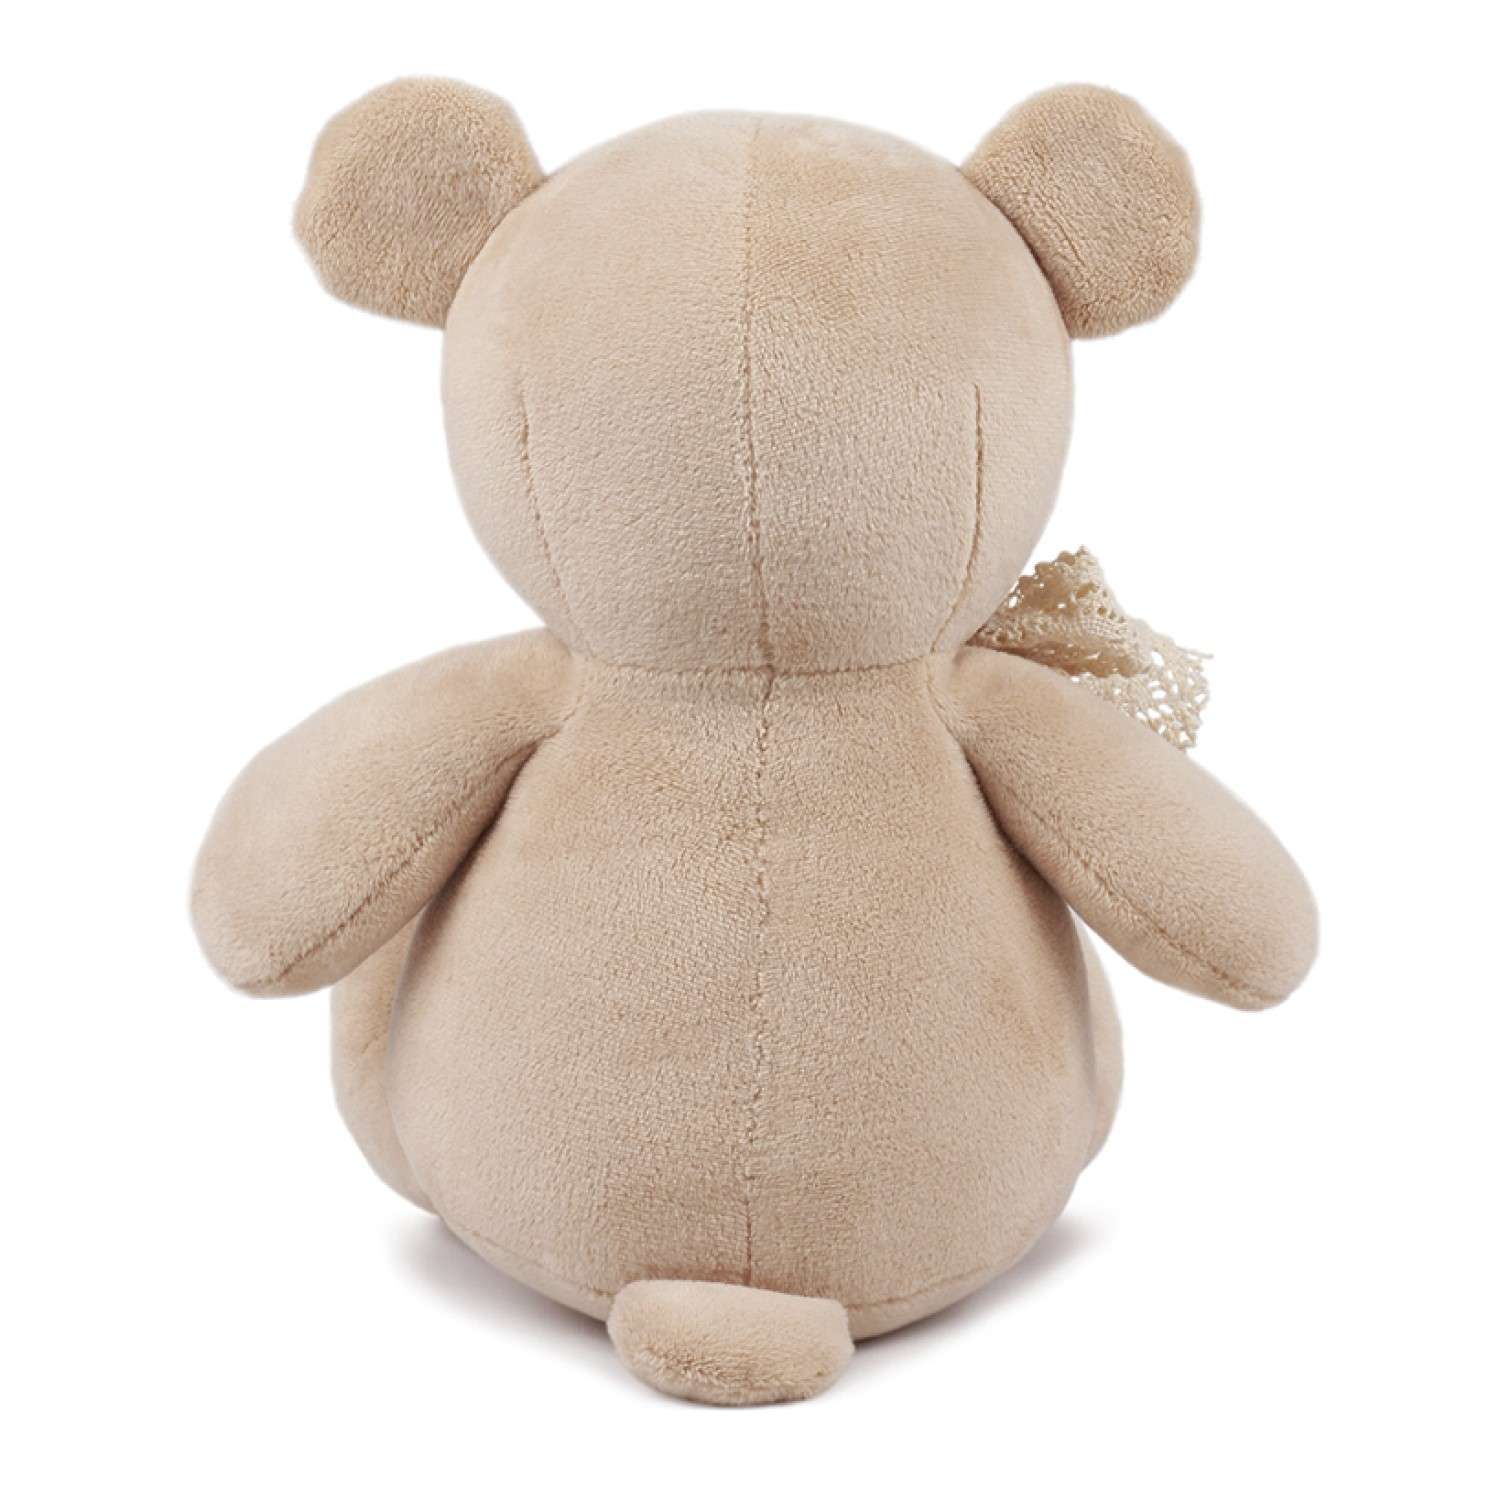 Мягкая игрушка KULT of toys плюшевый медведь в подарочной коробке misha подарок для девочки 30 см - фото 4